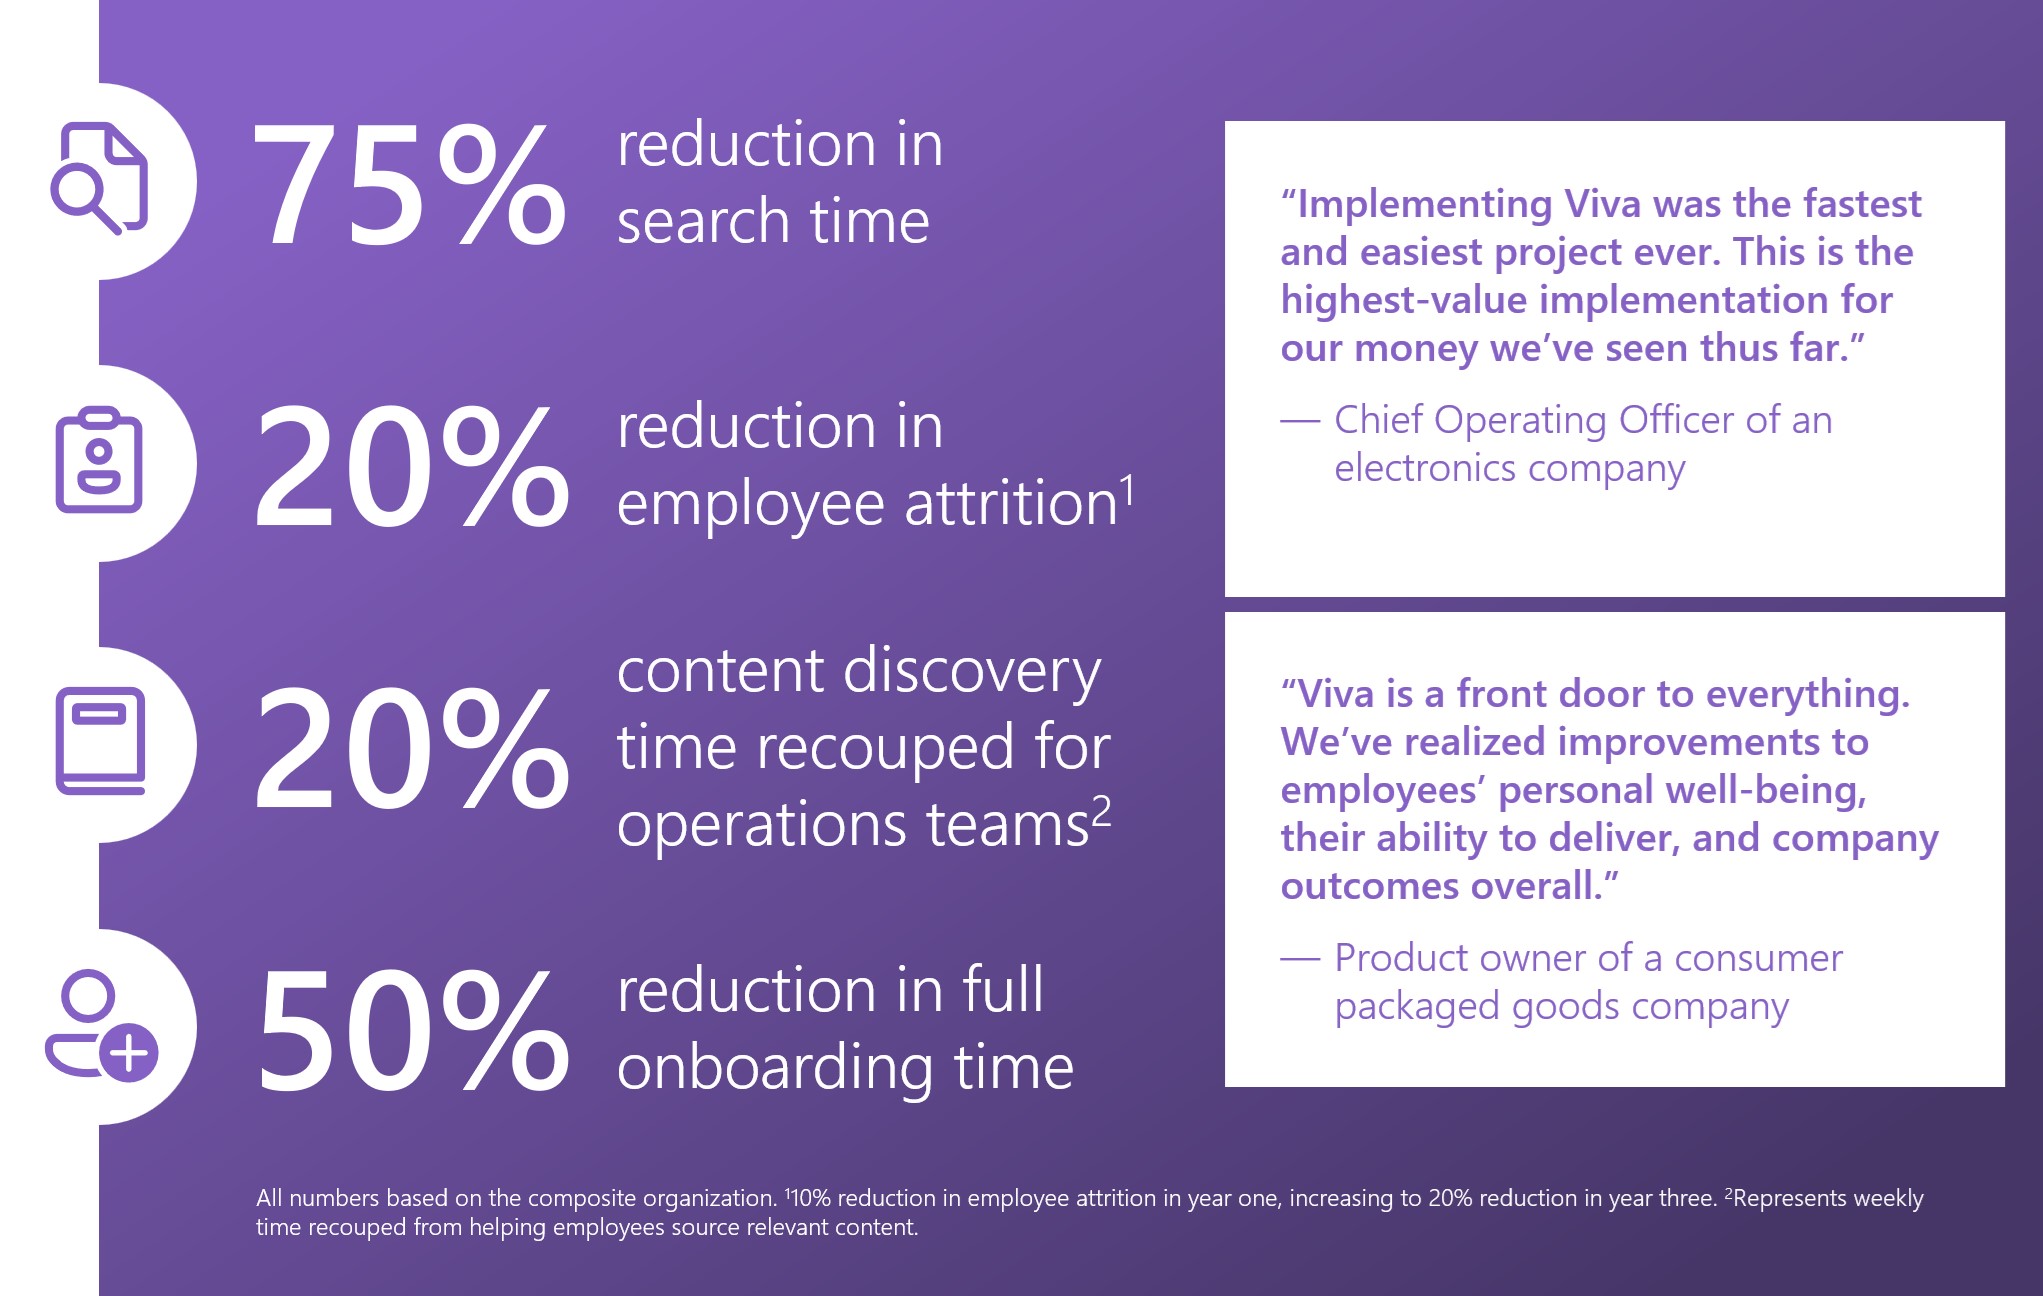 Nuevo estudio Total Economic Impact™ de Microsoft Viva de Forrester Consulting. Las estadísticas incluyen: 75% de reducción en el tiempo de búsqueda, 20% de reducción en el desgaste de los empleados, 20% de tiempo de descubrimiento de contenido recuperado y 50% de reducción en el tiempo completo de incorporación.